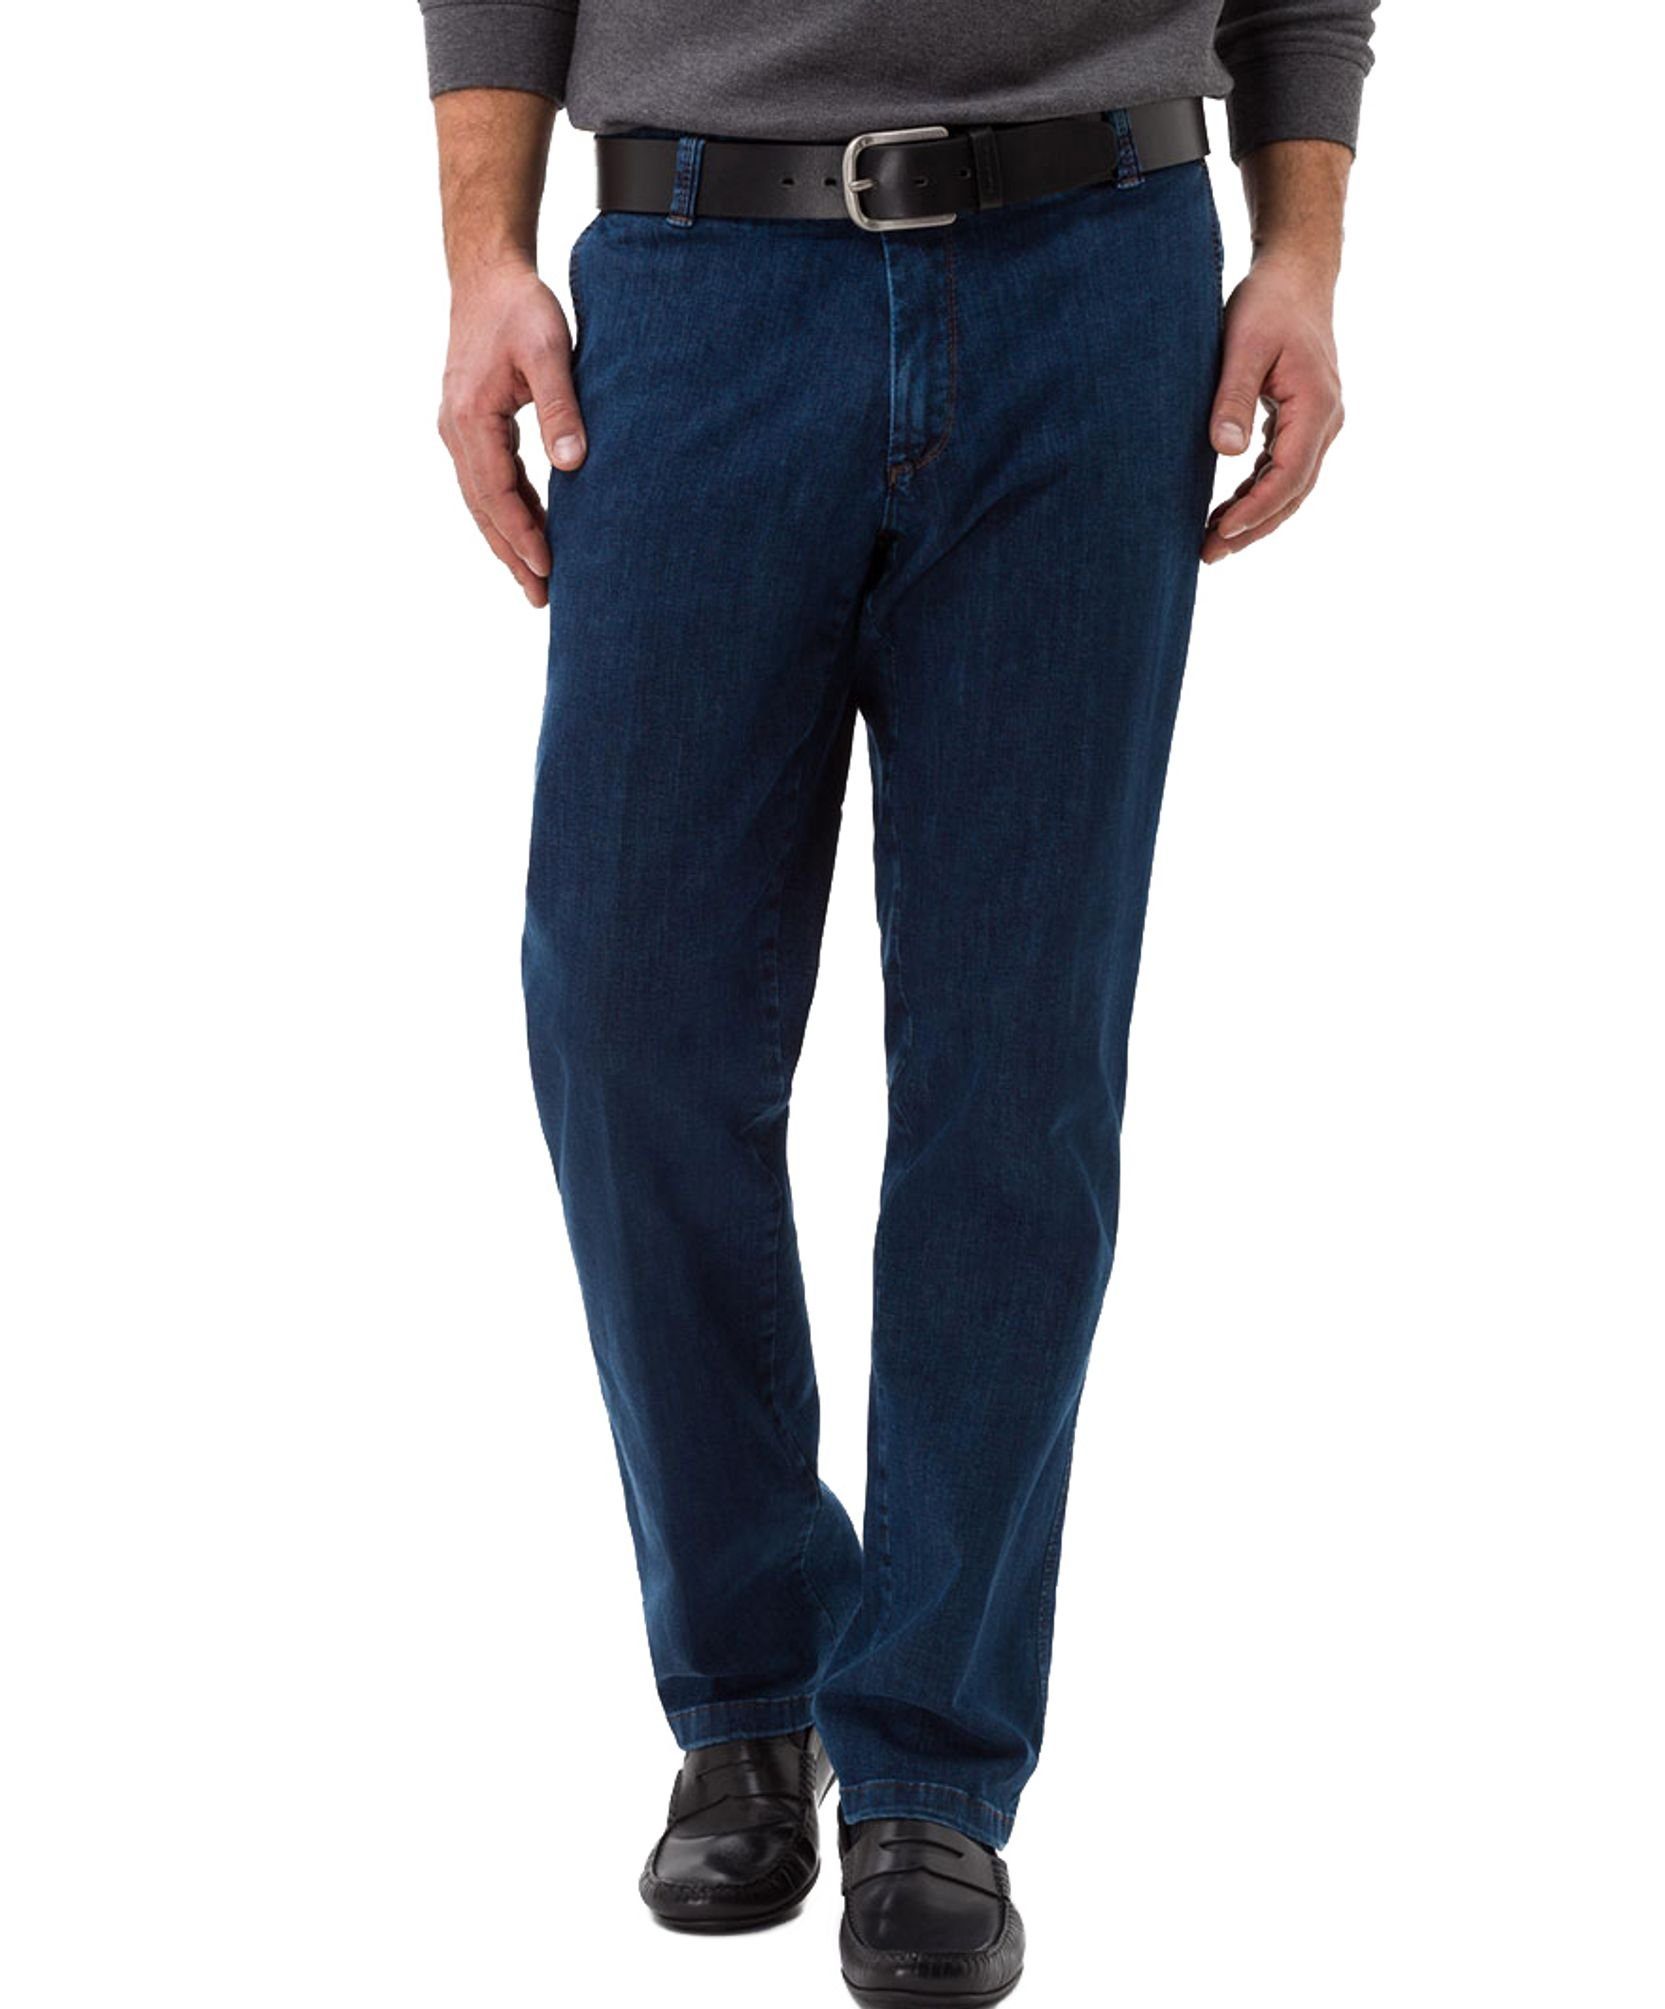 EUREX by BRAX 5-Pocket-Jeans online kaufen | OTTO